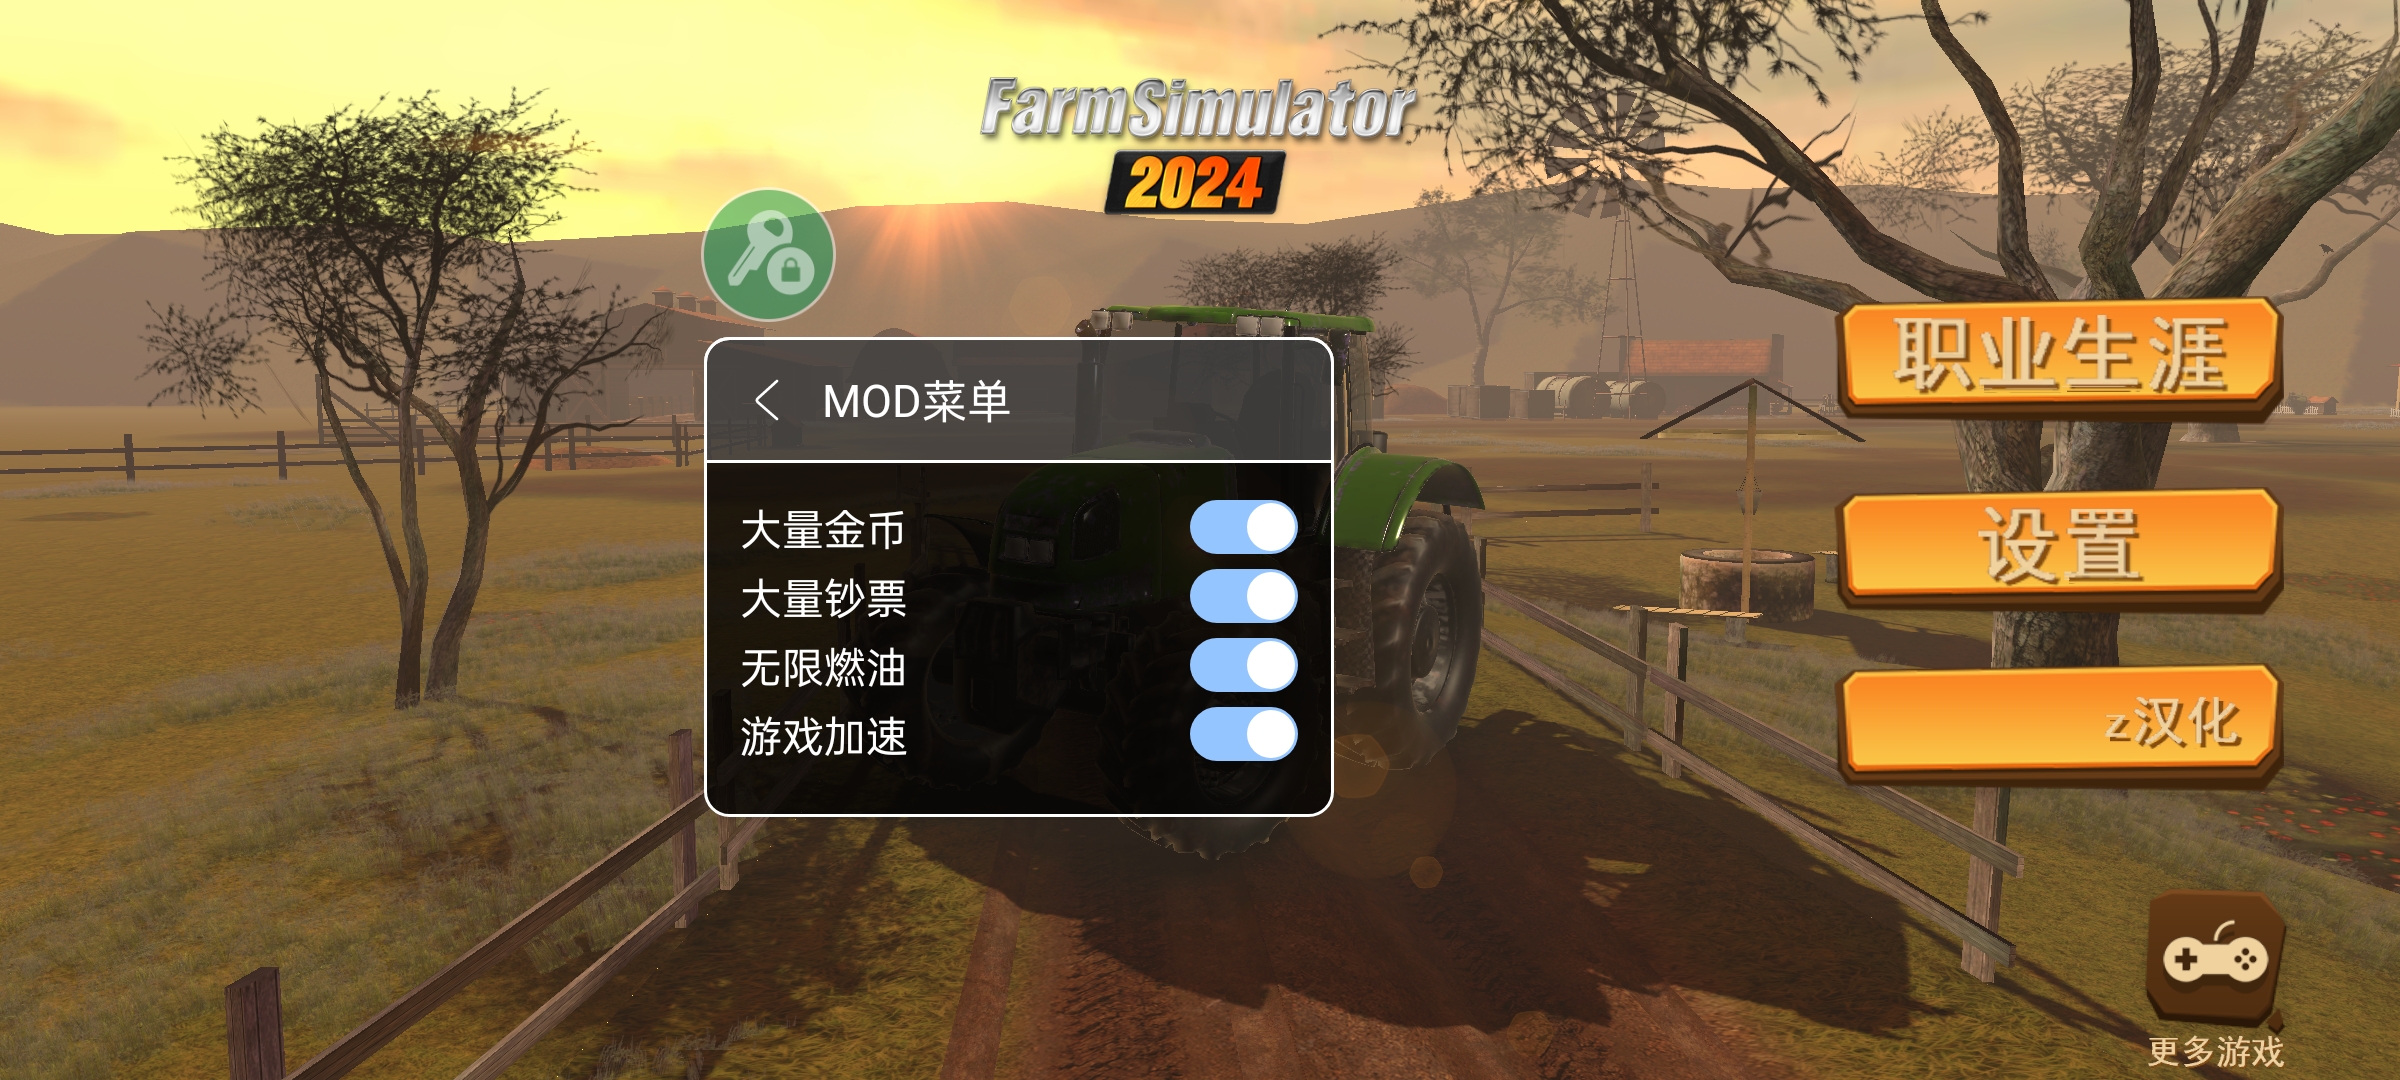 农场模拟2024中文版截图1